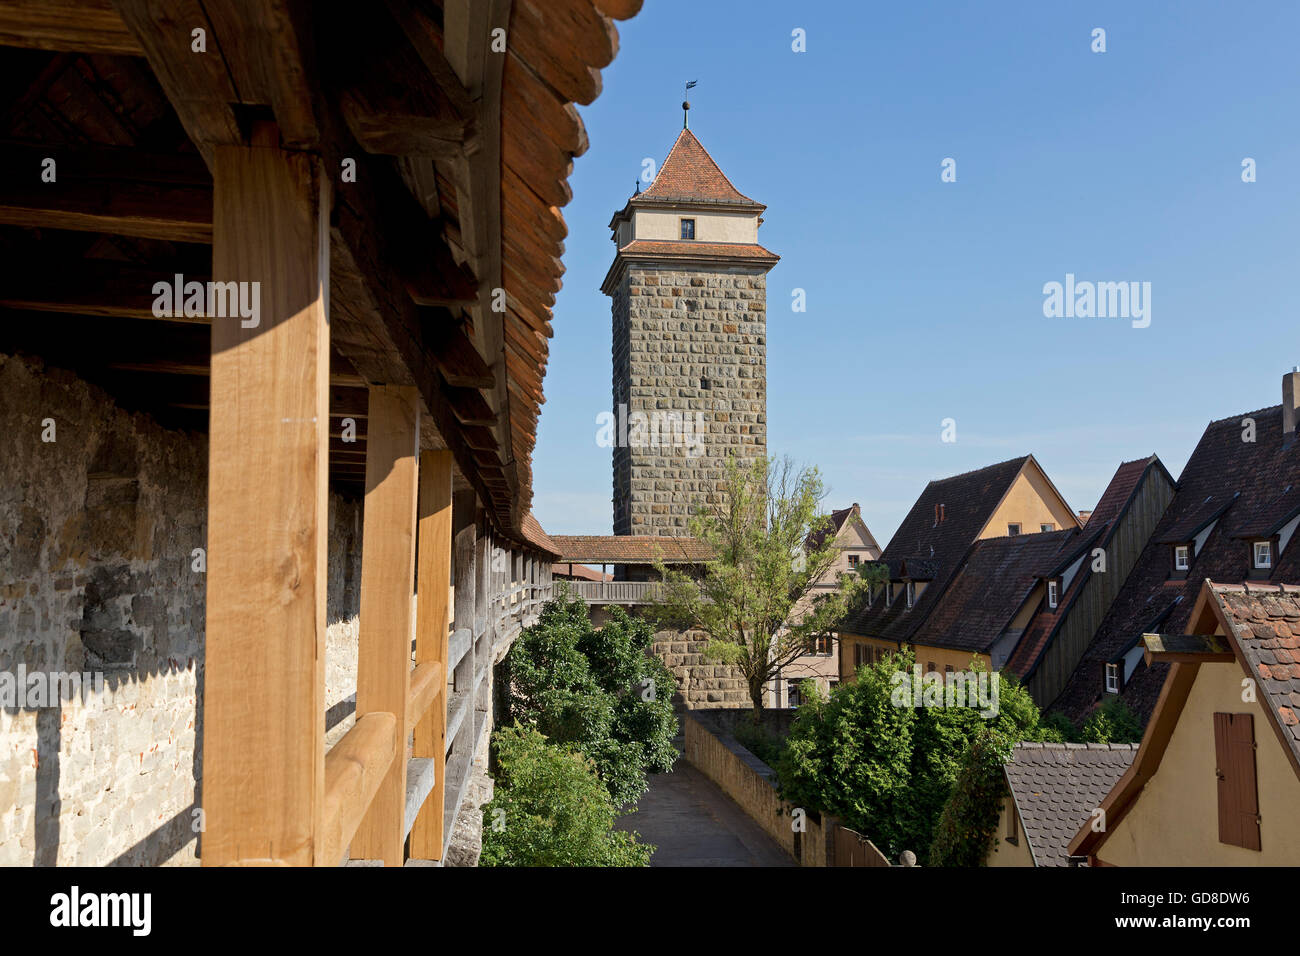 Brüstung Spaziergang, Galgentor, Altstadt, Rothenburg Ob der Tauber, Franken, Bayern, Deutschland Stockfoto